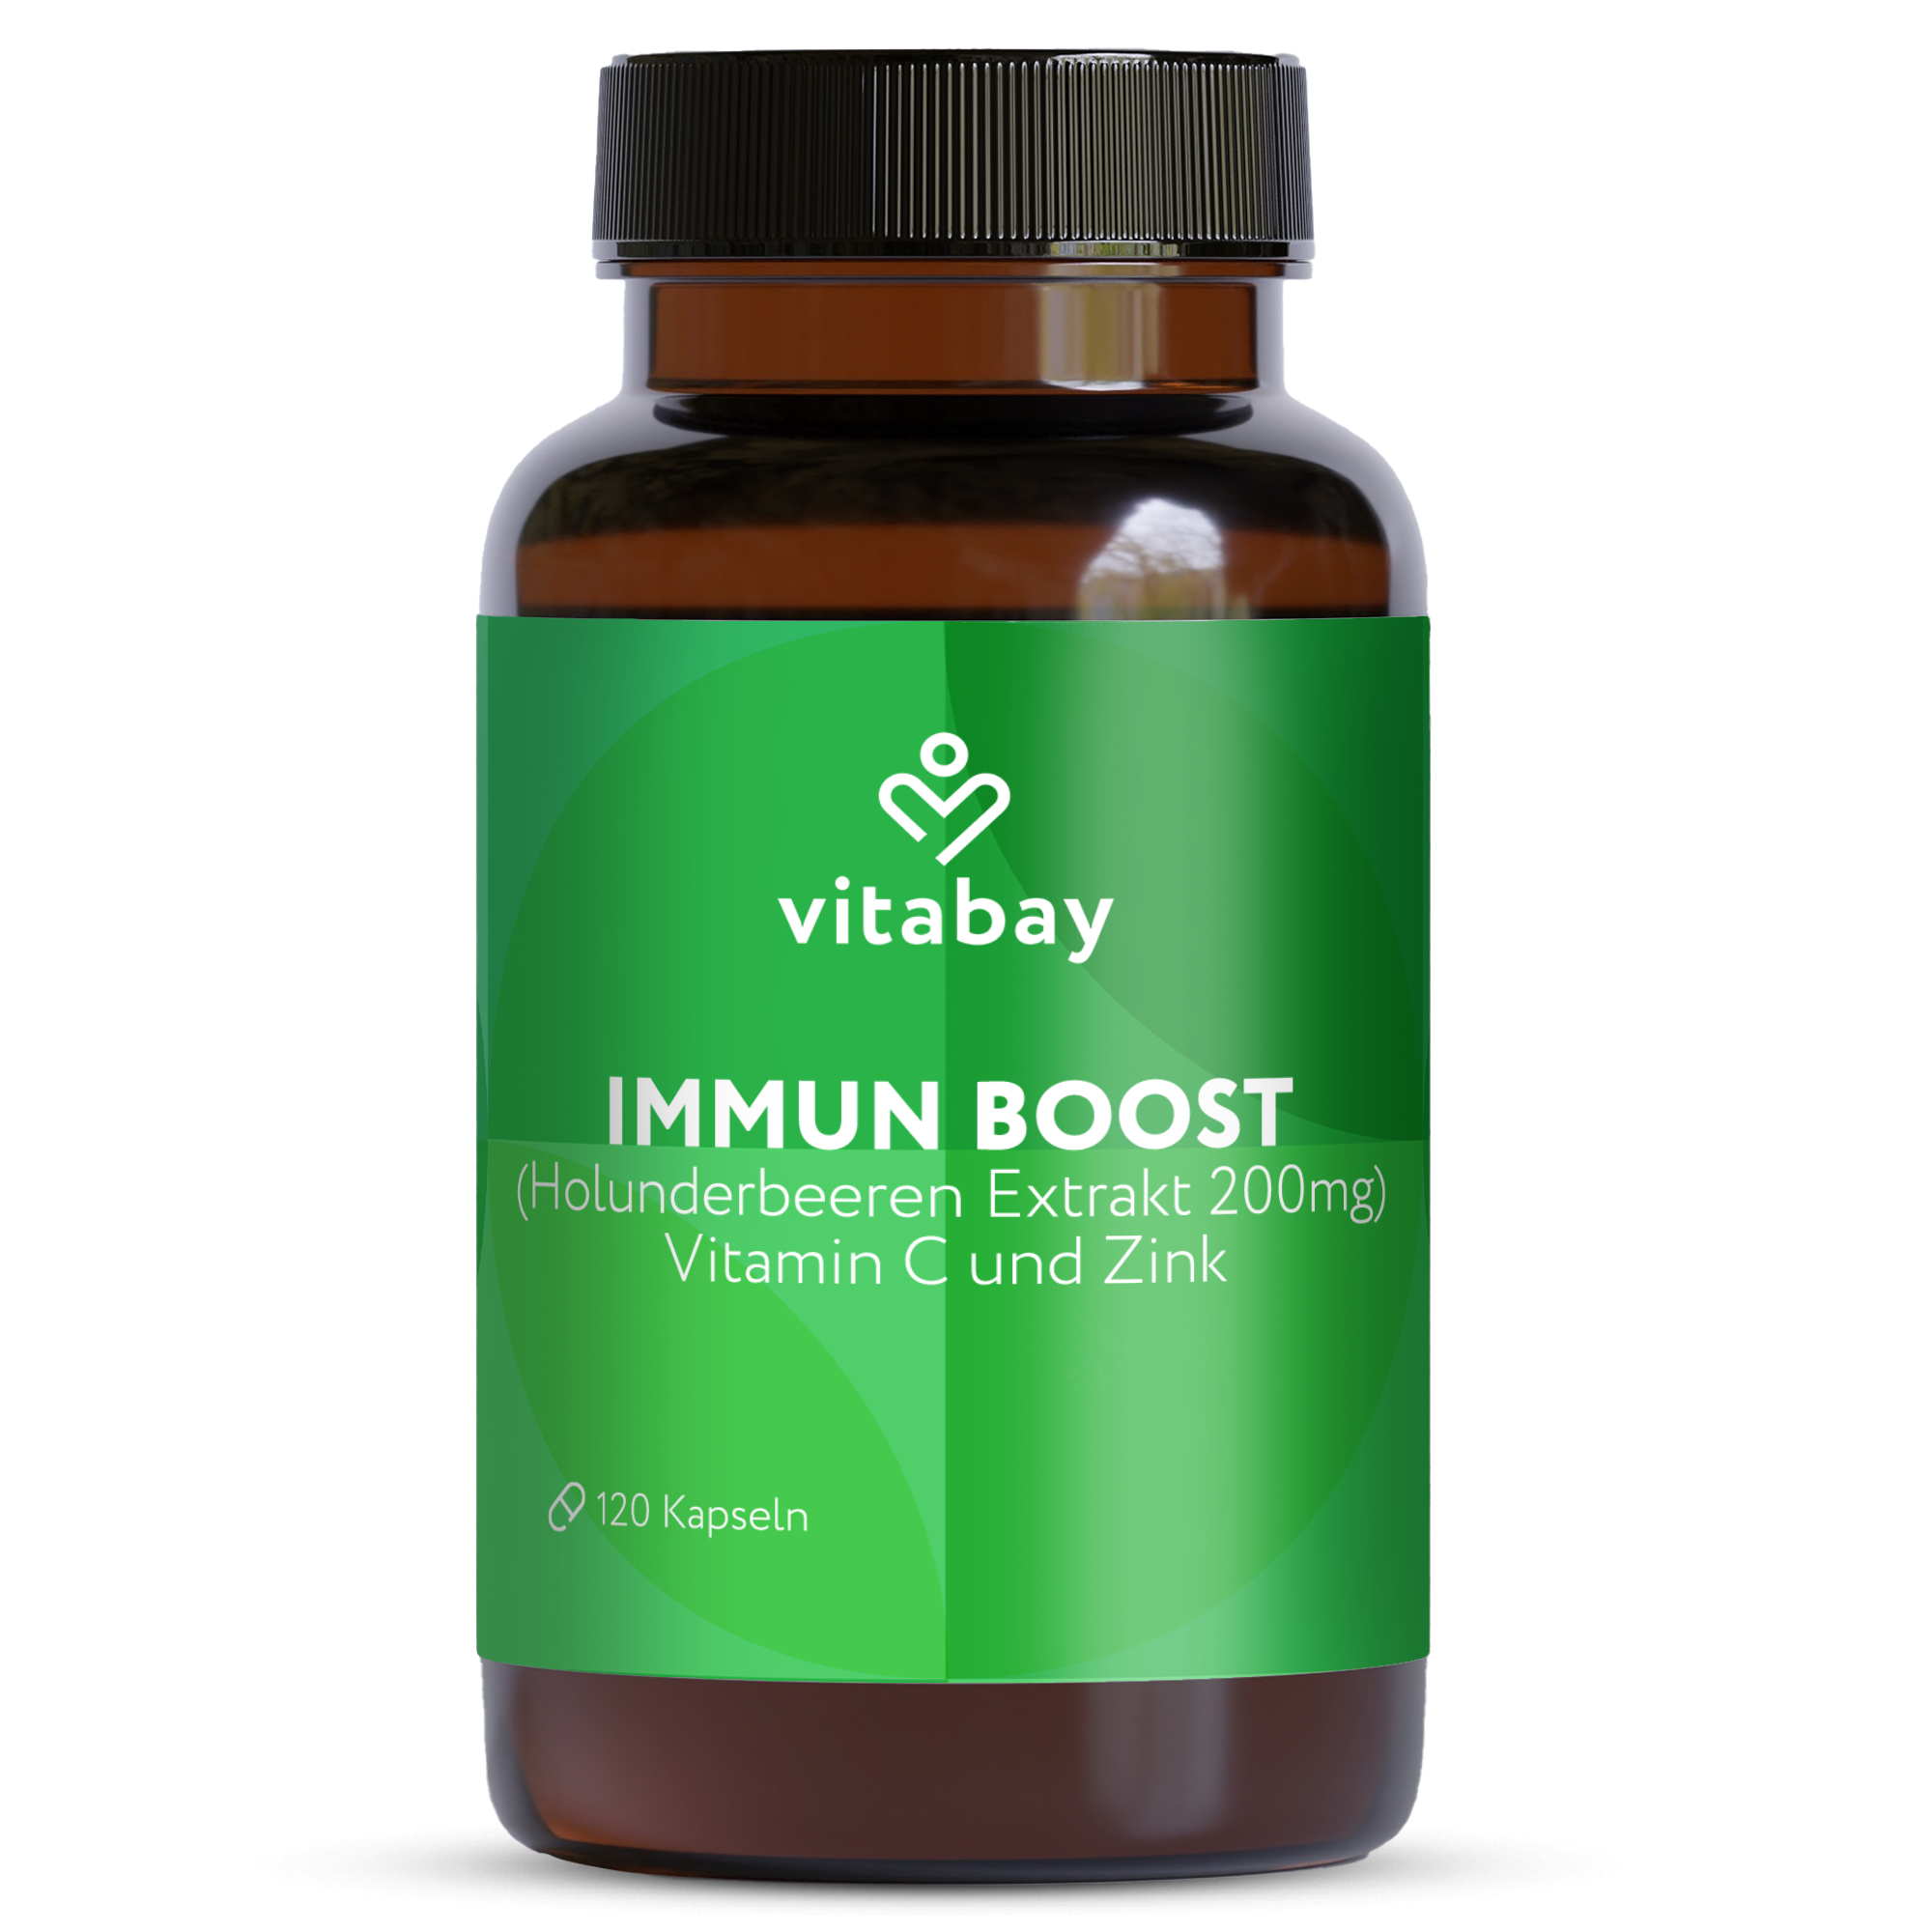 Immun Boost - mit Holunderbeeren Extrakt 200mg, Vitamin C und Zink - Vegane Kapseln